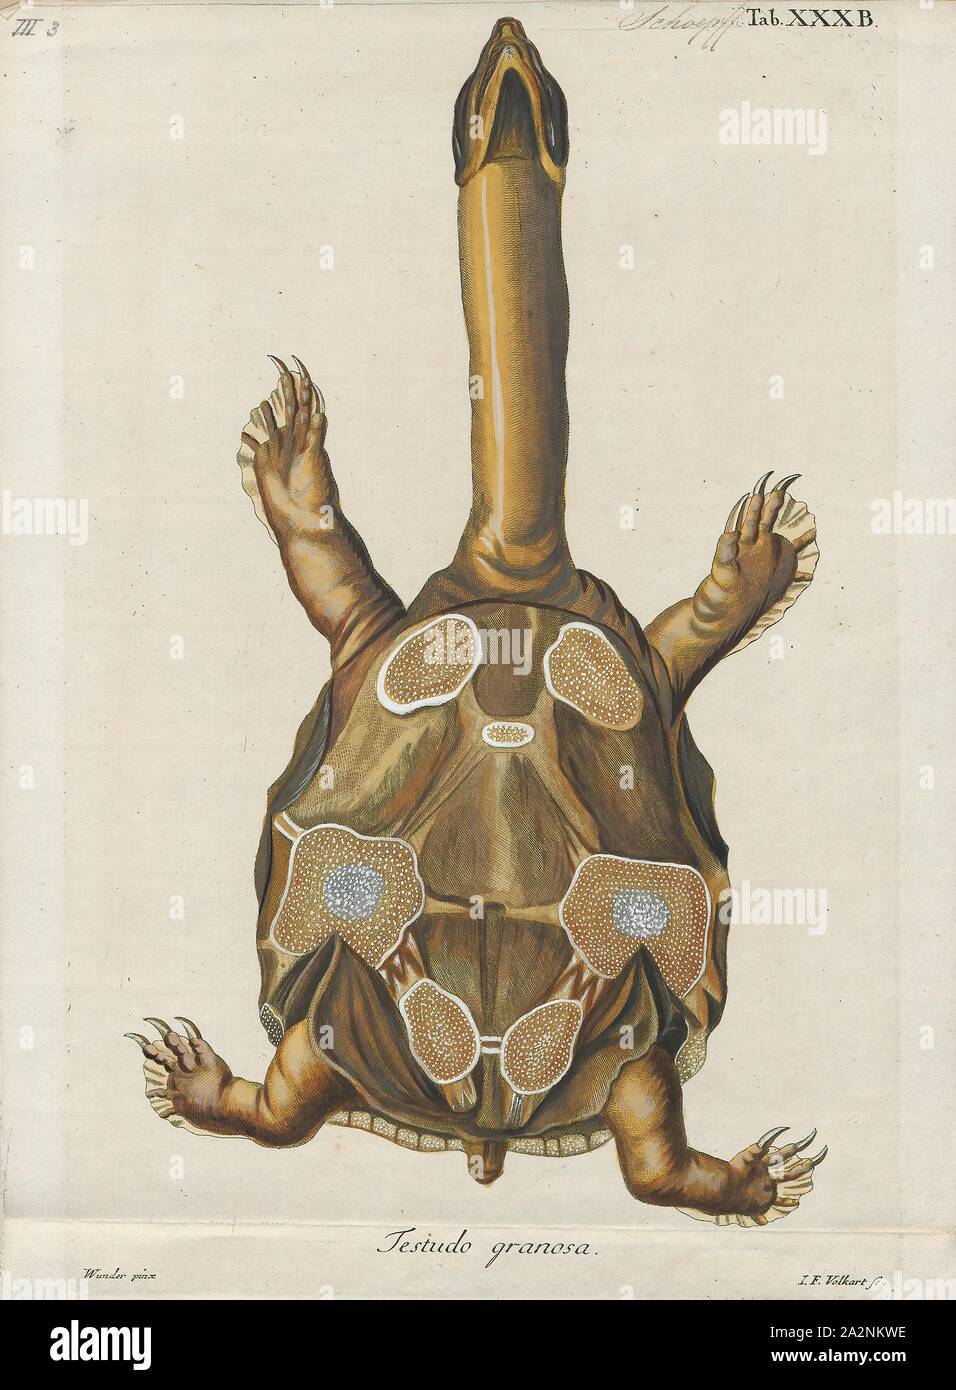 Testudo punctata, Drucken, die Indische flapshell Schildkröte (Lissemys punctata) ist eine Süßwasser-Arten von Schildkröten in Südasien gefunden. Die "Klappe - geschält" Name stammt aus dem Vorhandensein des femoralen Klappen entfernt auf dem PLASTRON. Diese Klappen der Haut umfassen die Glieder, wenn Sie in der Shell einfahren. Es ist unklar, was die Klappen zum Schutz vor Fressfeinden bieten. Indische flapshell Turtles sind weit verbreitet und häufig in den asiatischen Provinzen., Magen Seite Stockfoto